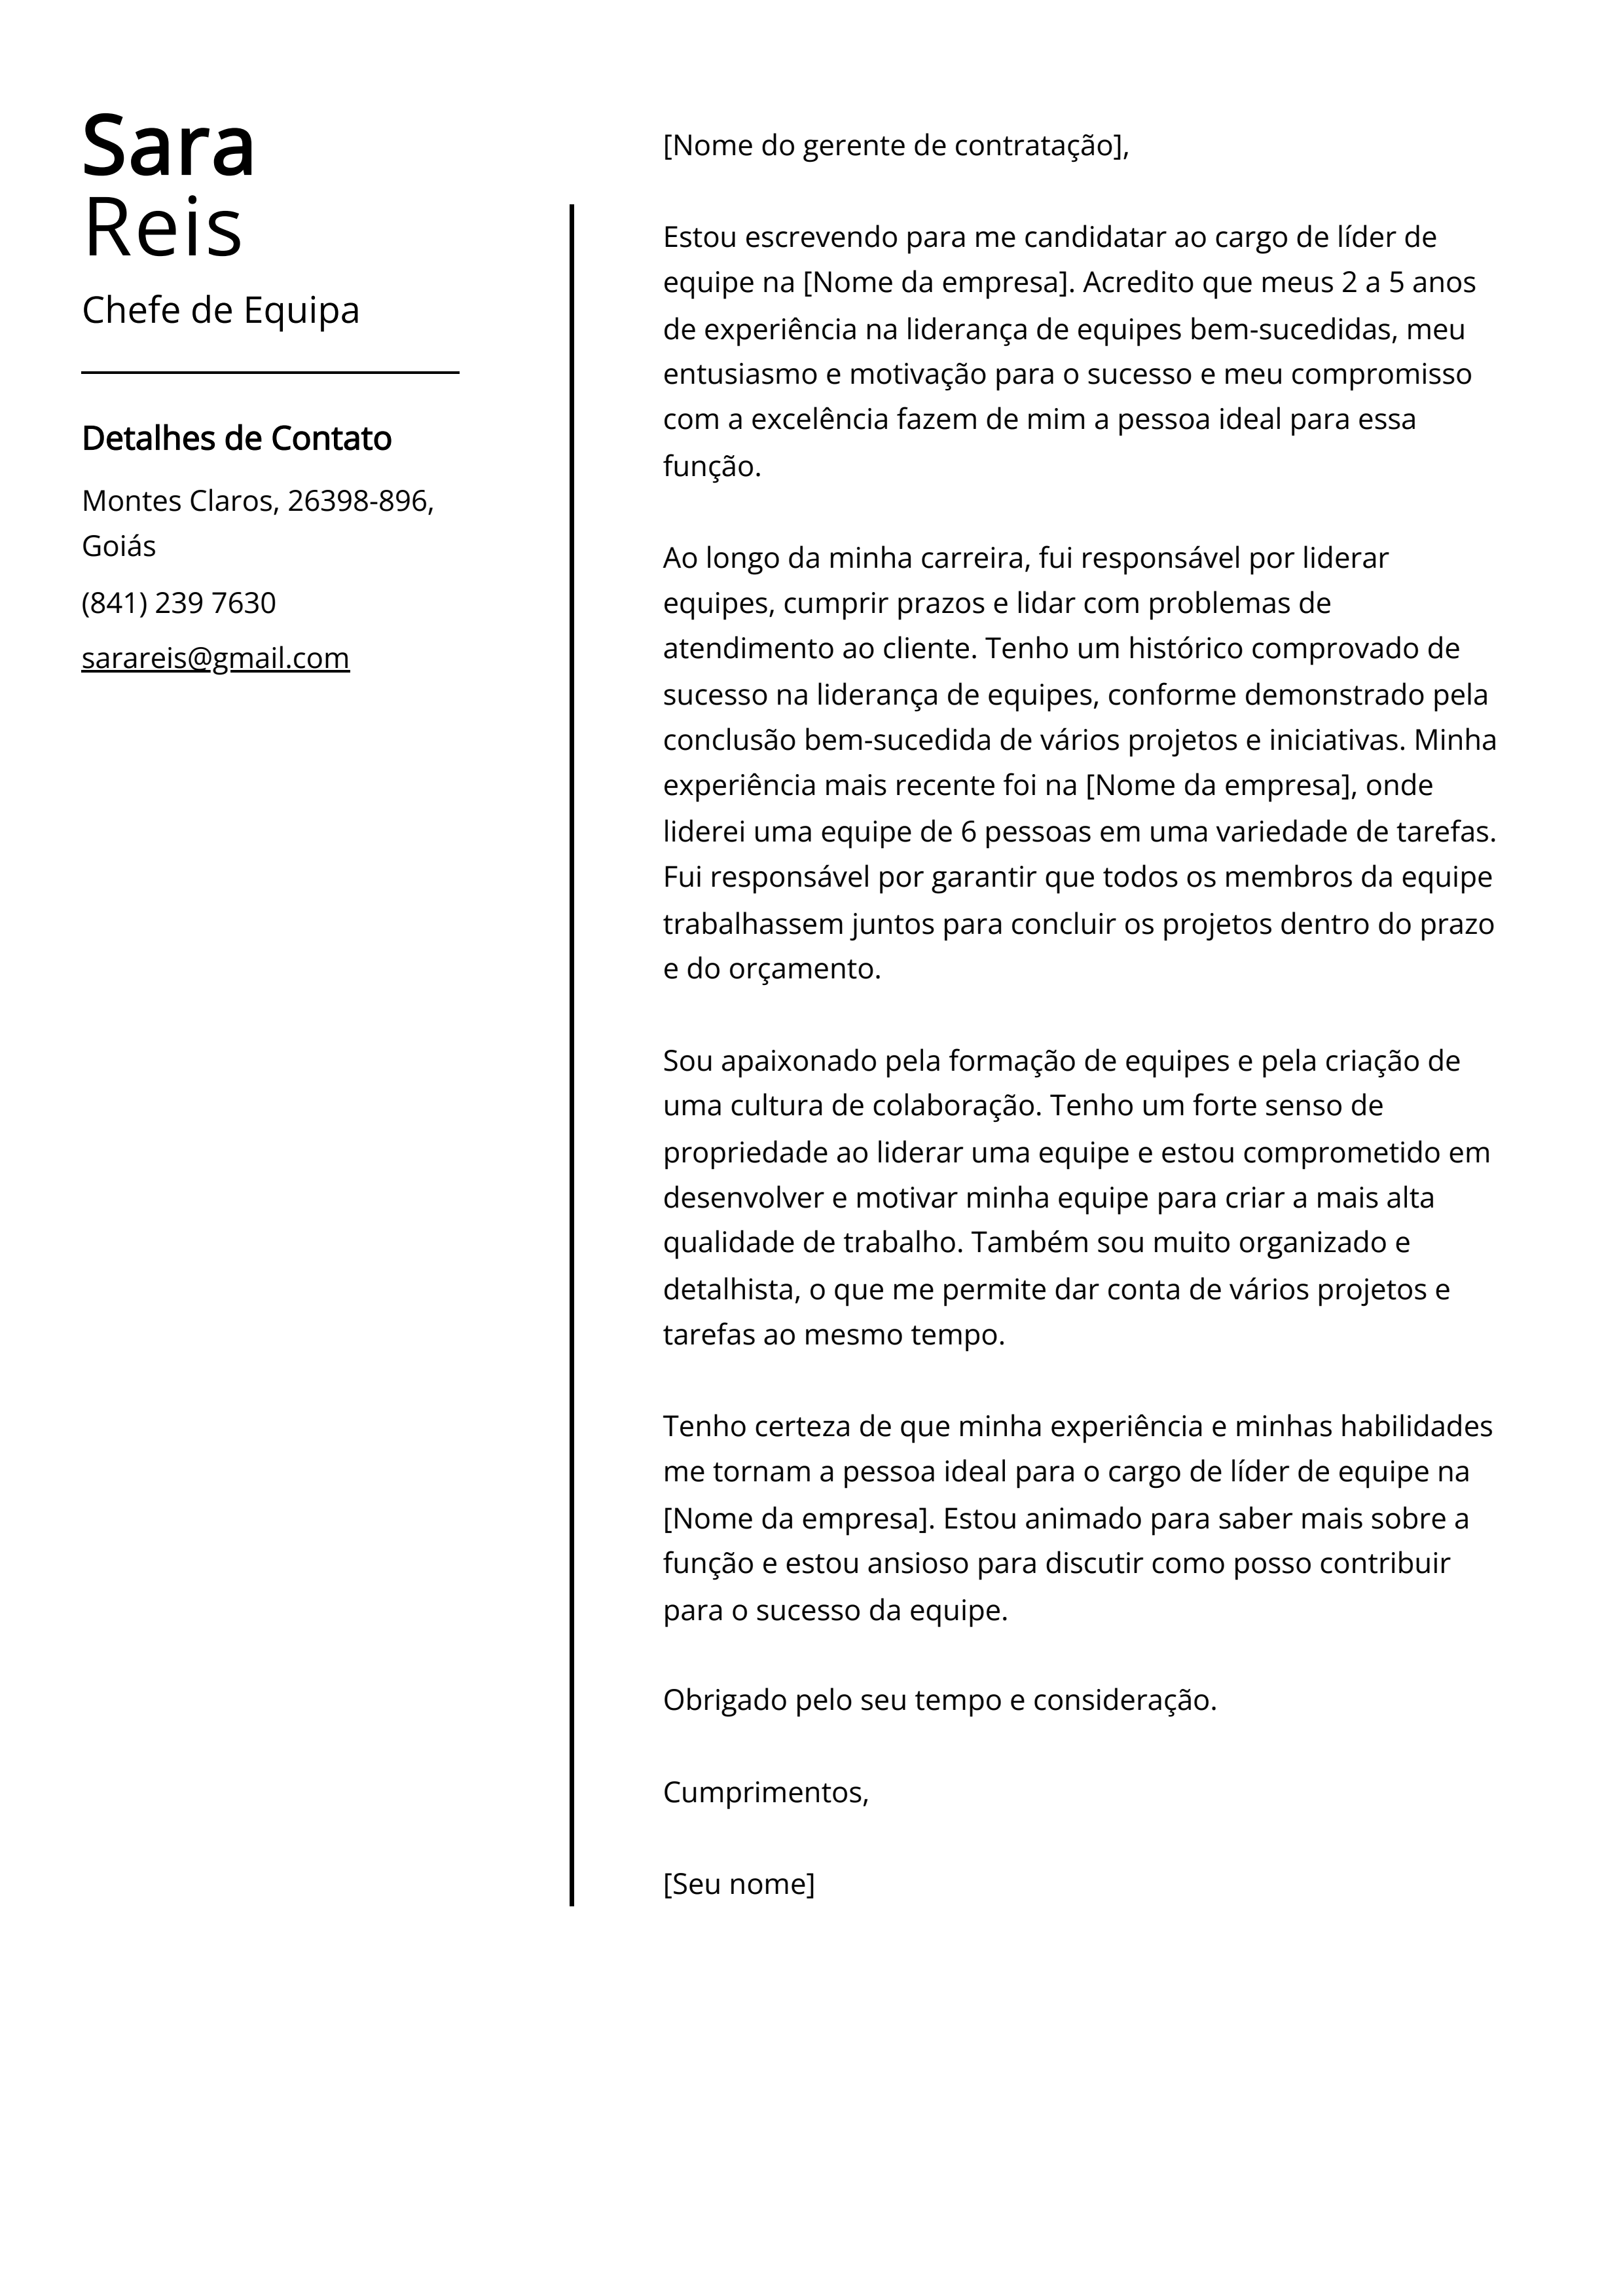 Exemplo de carta de apresentação do Chefe de Equipe